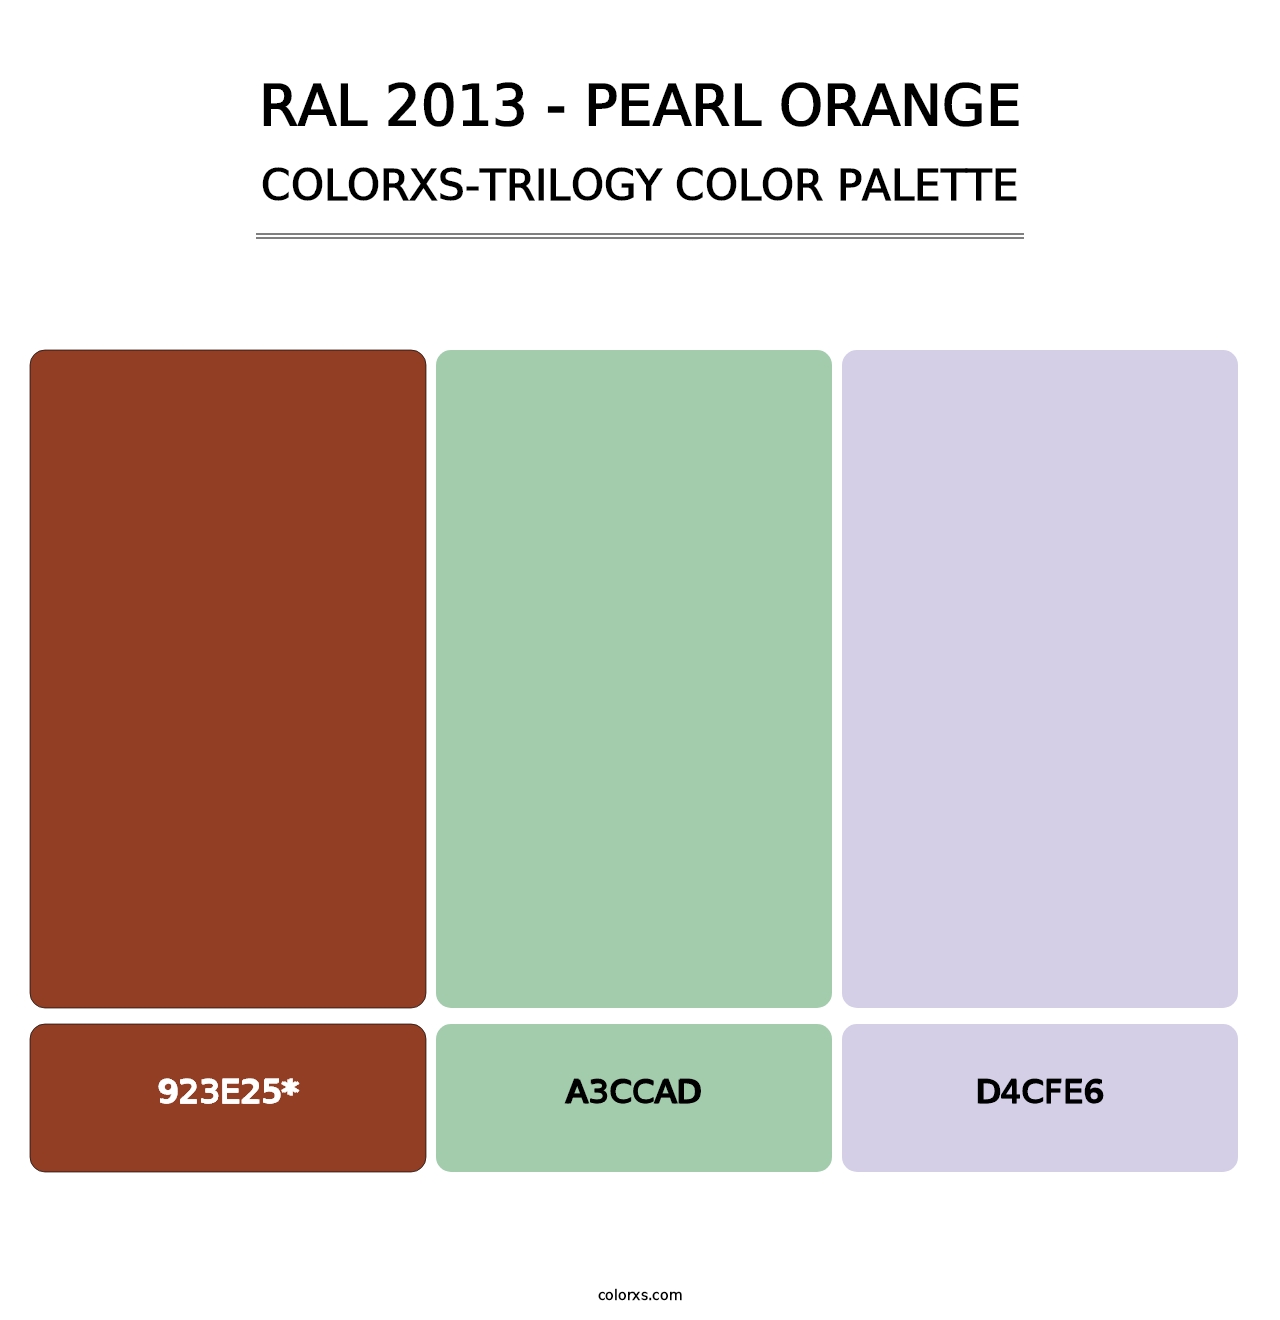 RAL 2013 - Pearl Orange - Colorxs Trilogy Palette